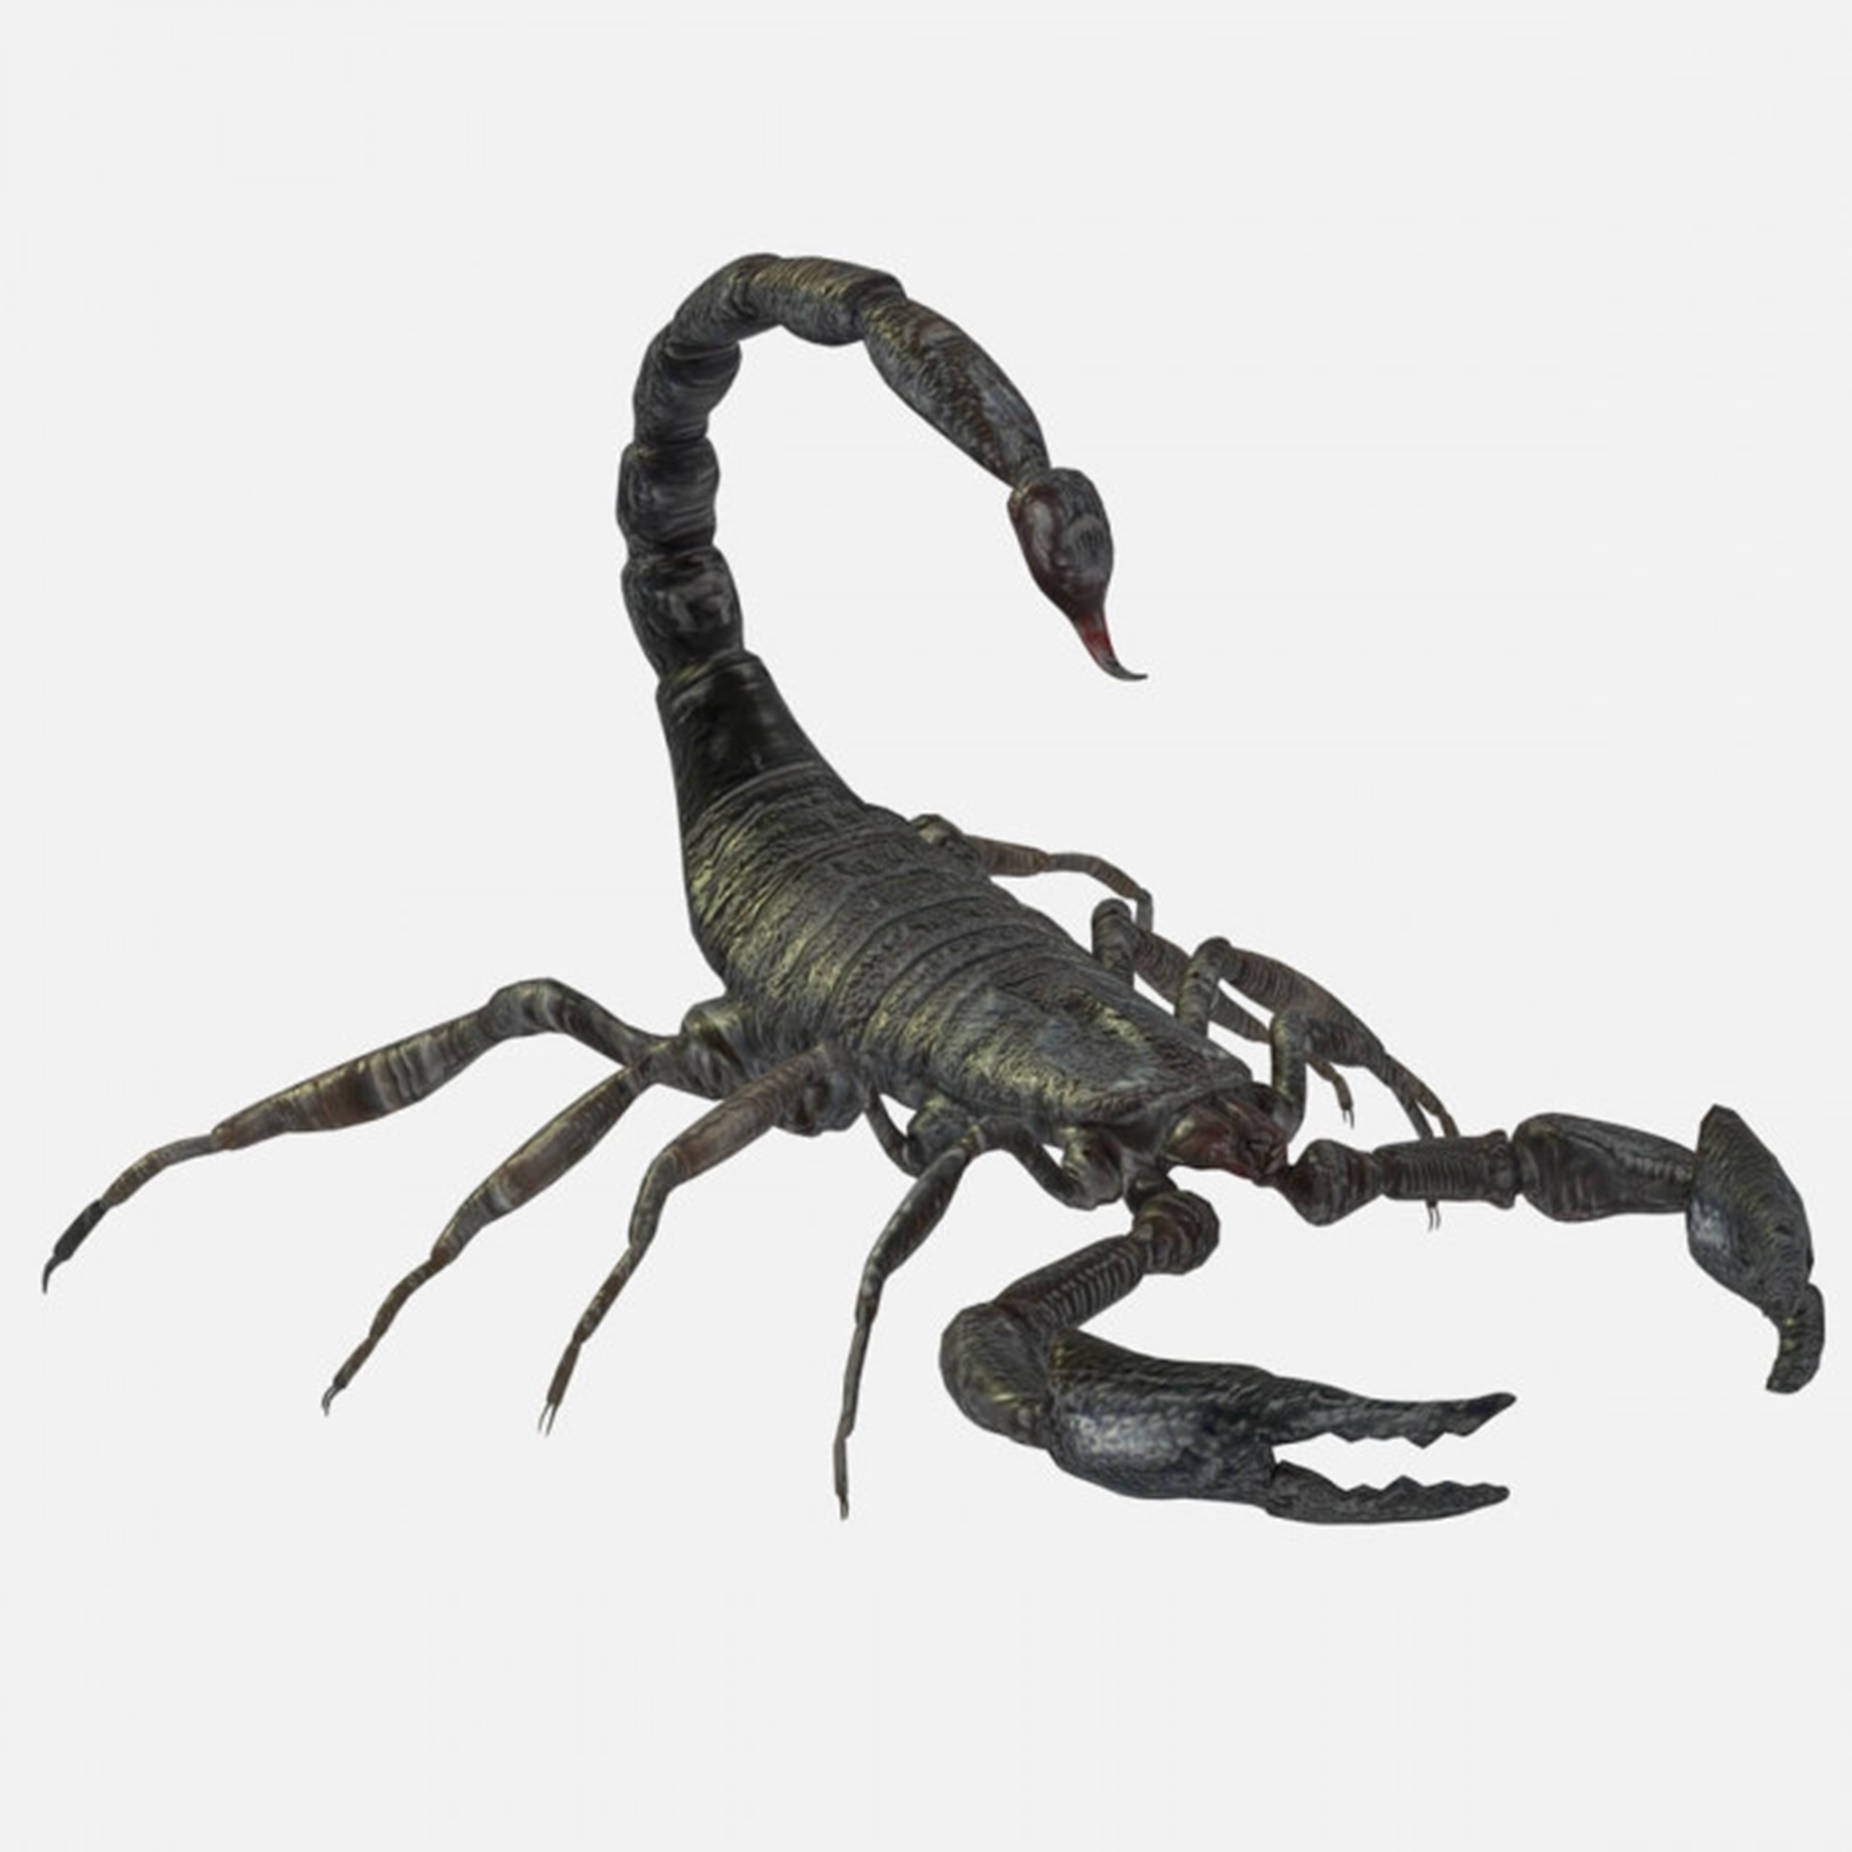 Scorpion 3D Render Hvid Returne til din mobil. Wallpaper